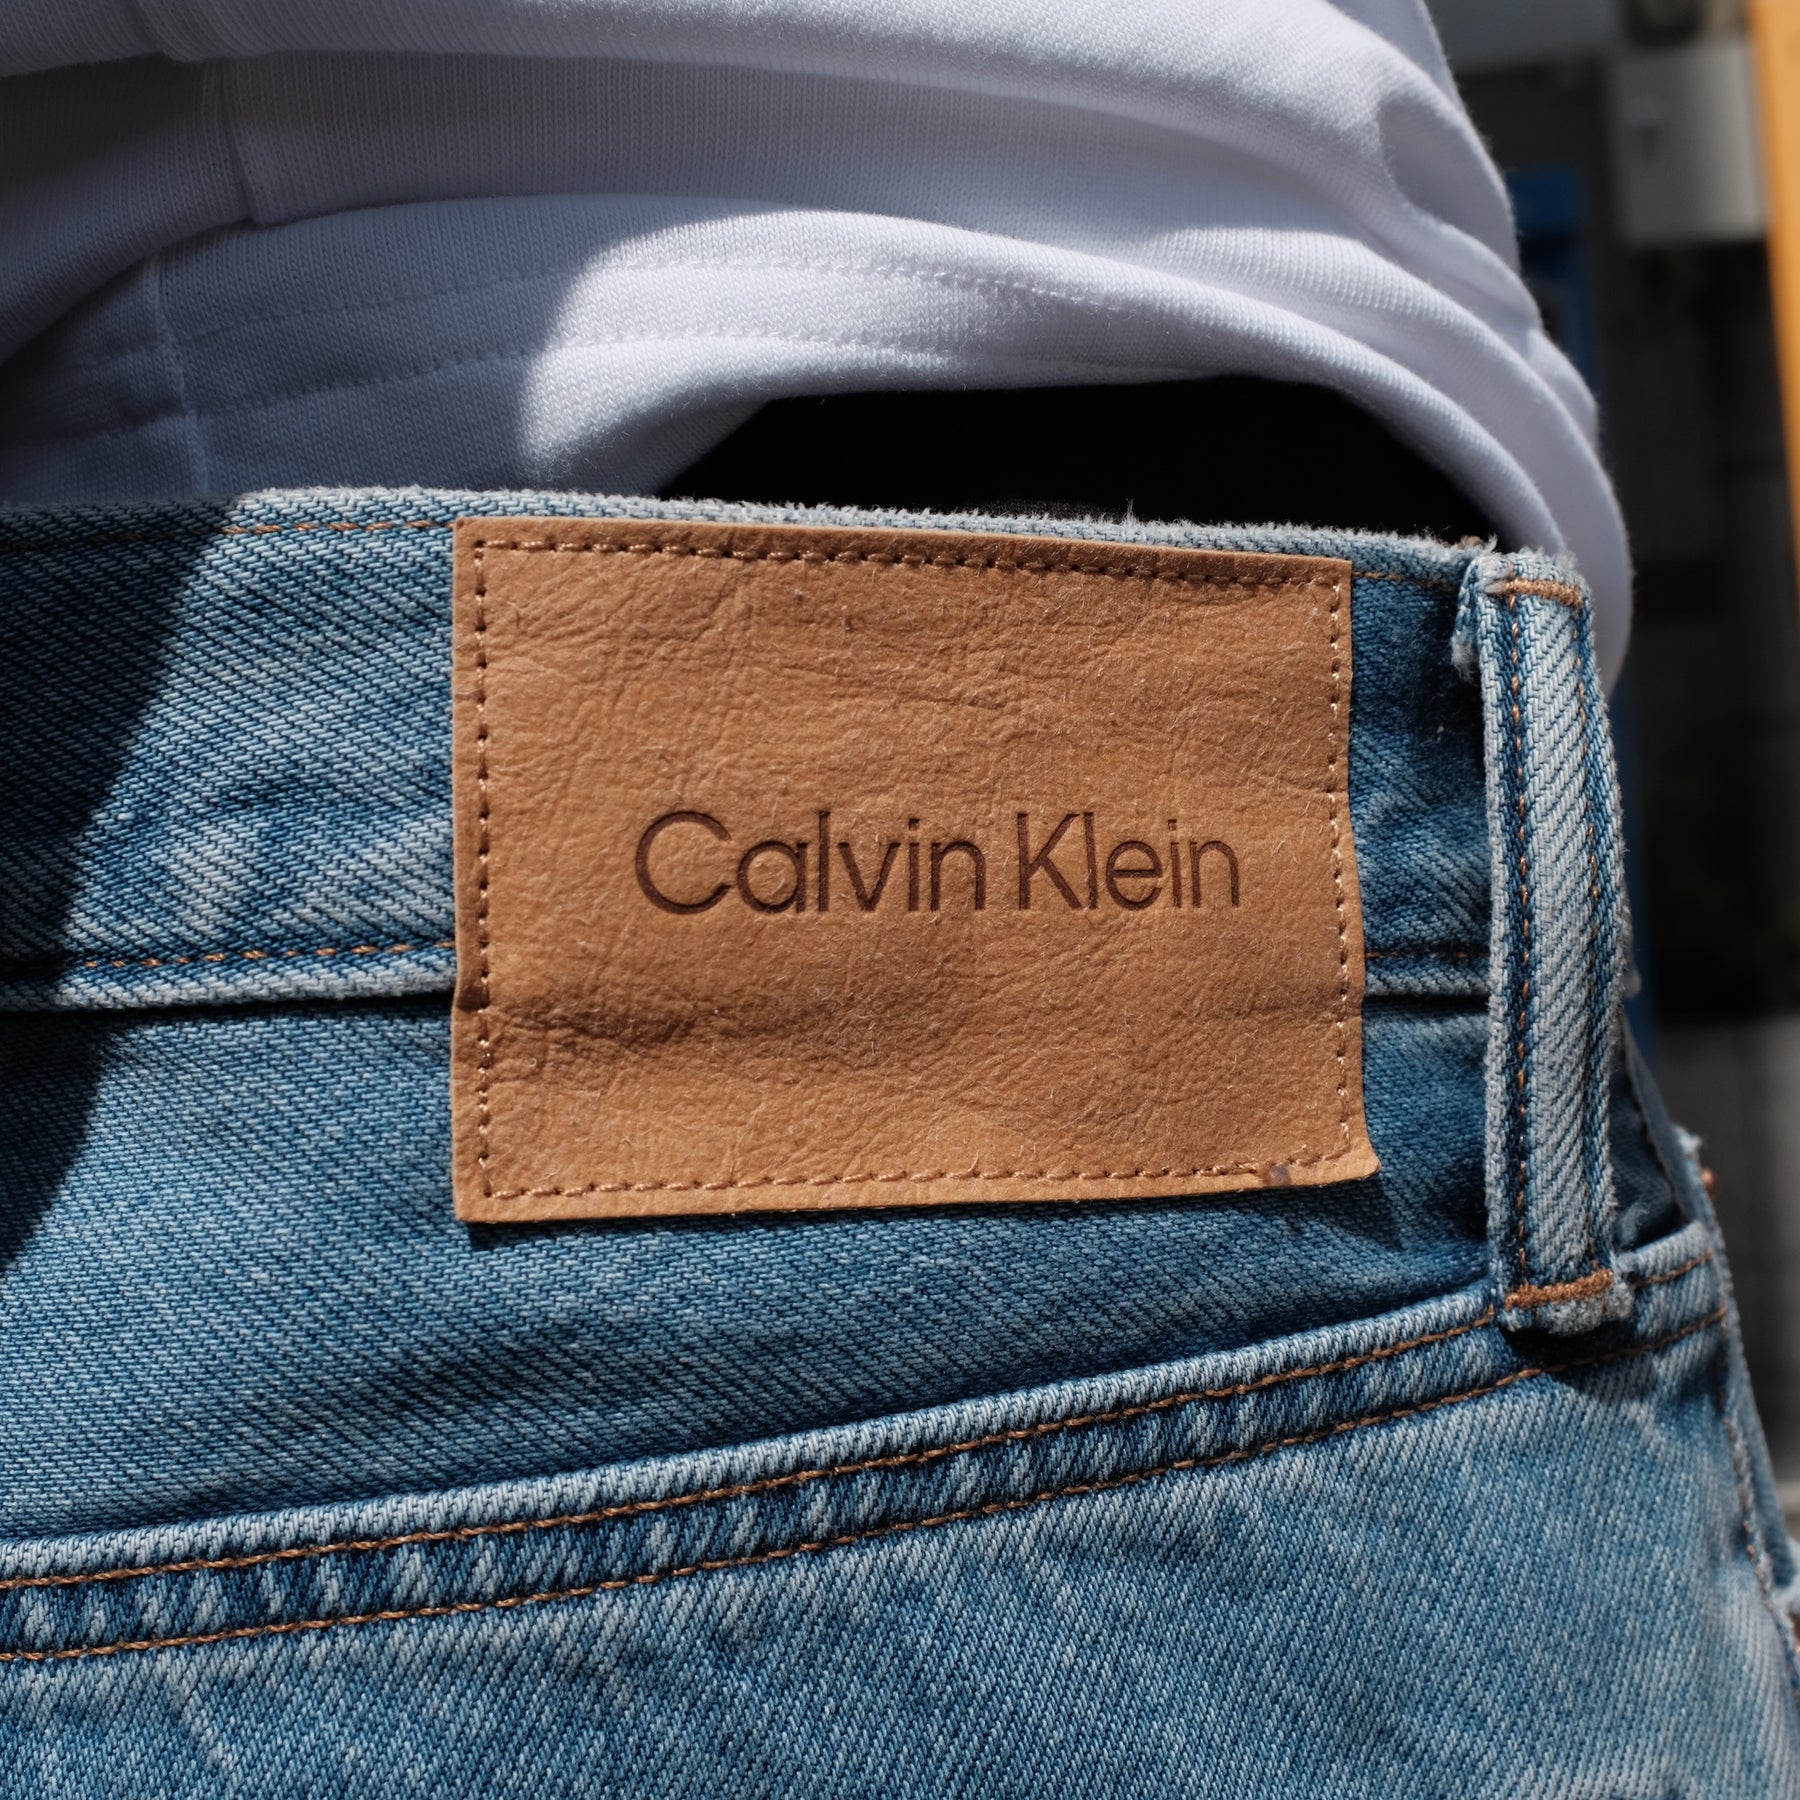 Calvin Klein / TWISTED SEAM JEAN LIGHT INDIGO BLUE